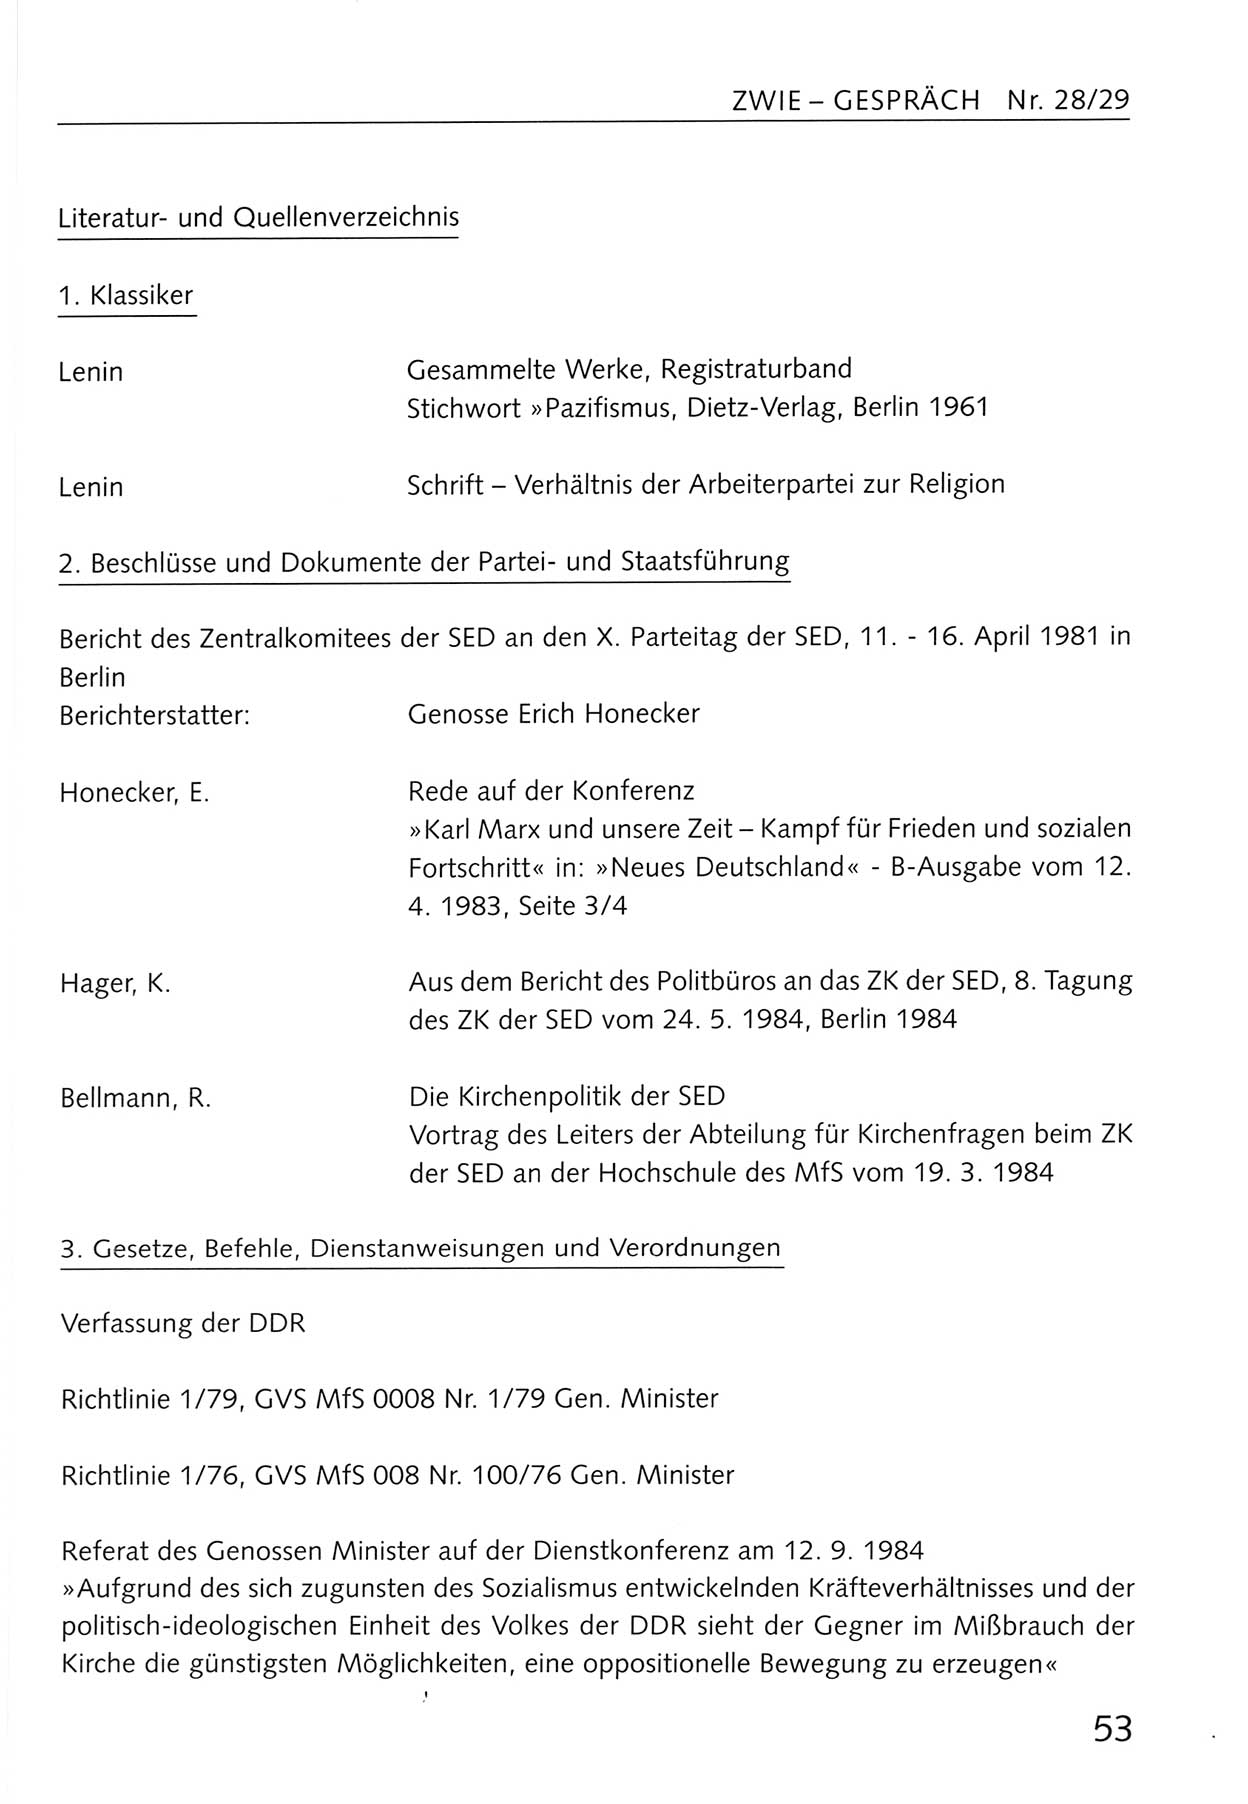 Zwie-Gespräch, Beiträge zum Umgang mit der Staatssicherheits-Vergangenheit [Deutsche Demokratische Republik (DDR)], Ausgabe Nr. 28/29, Berlin 1995, Seite 53 (Zwie-Gespr. Ausg. 28/29 1995, S. 53)